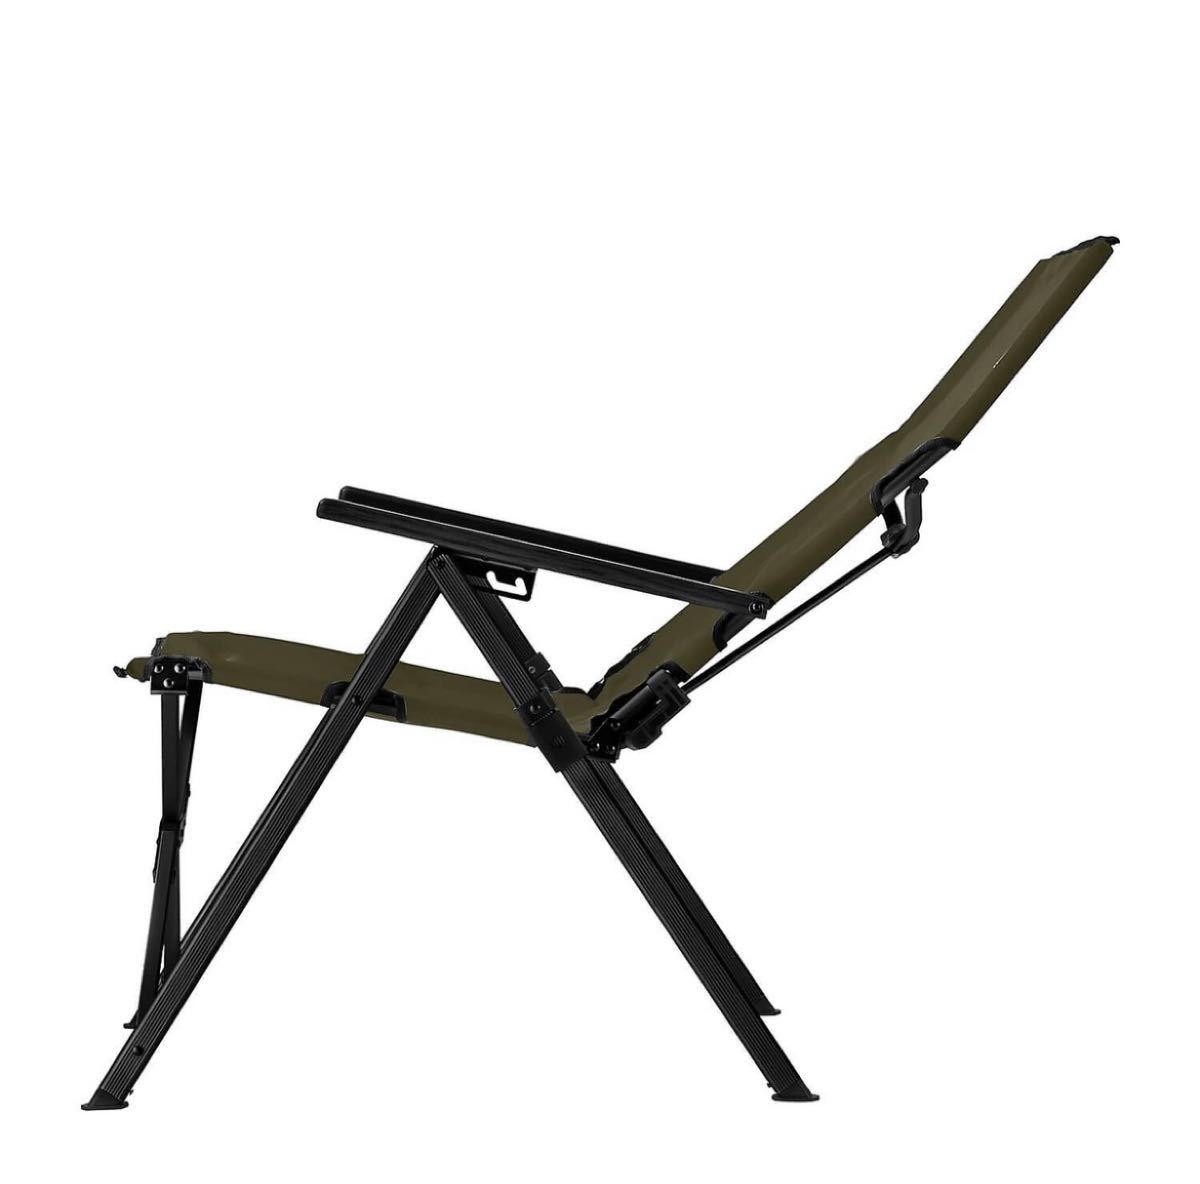 コールマン(COLEMAN) レイチェア(オリーブ) キャンプ用品 ファミリーチェア 椅子 オリーブ 2脚